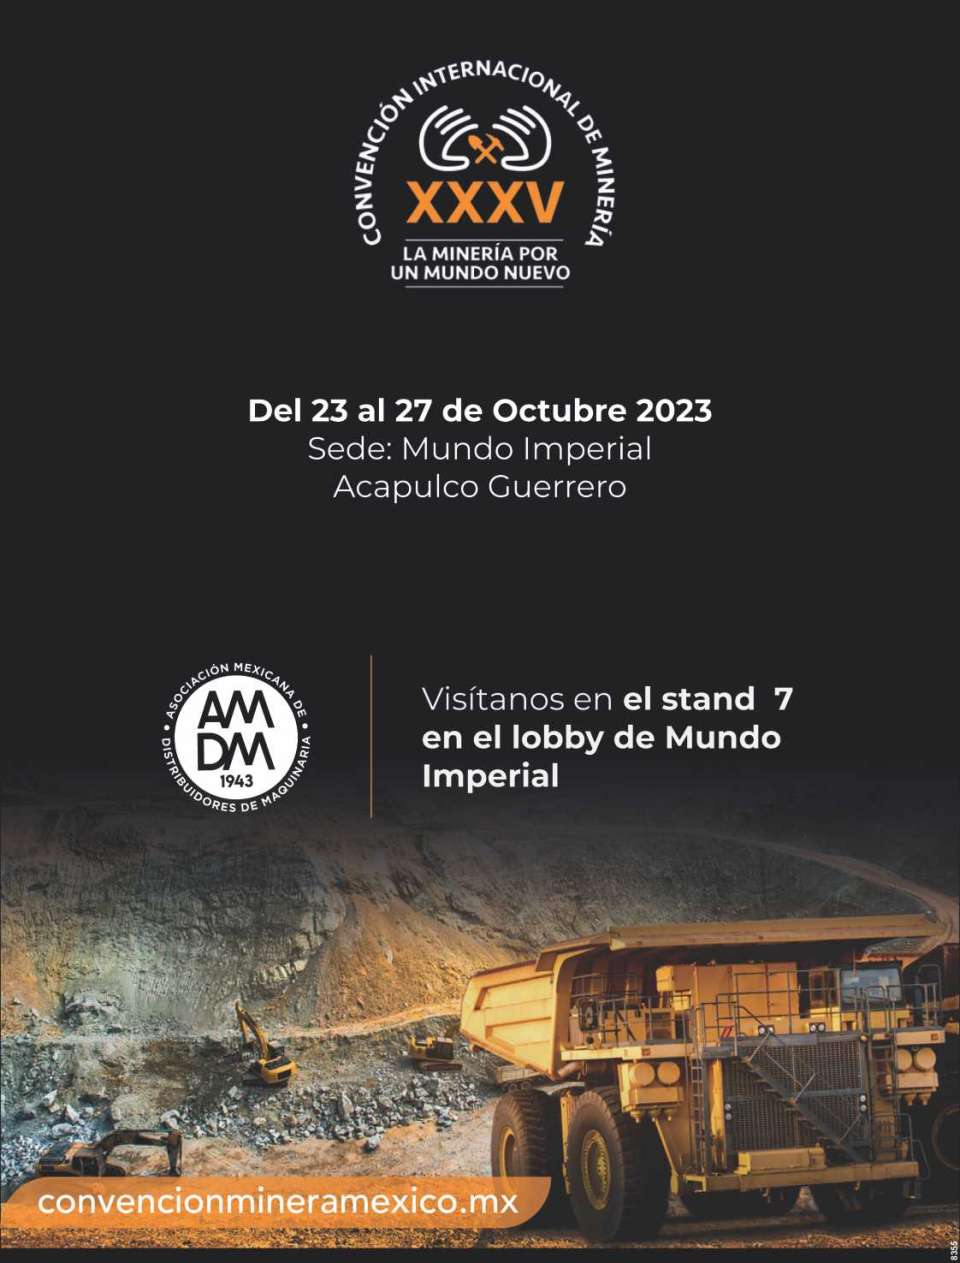 Conoce los Beneficios de pertenecer a la Asociacion mas importante de Maquinaria en Mexico. Presentes en el Stand 7 en Convencion Internacional de Mineria.